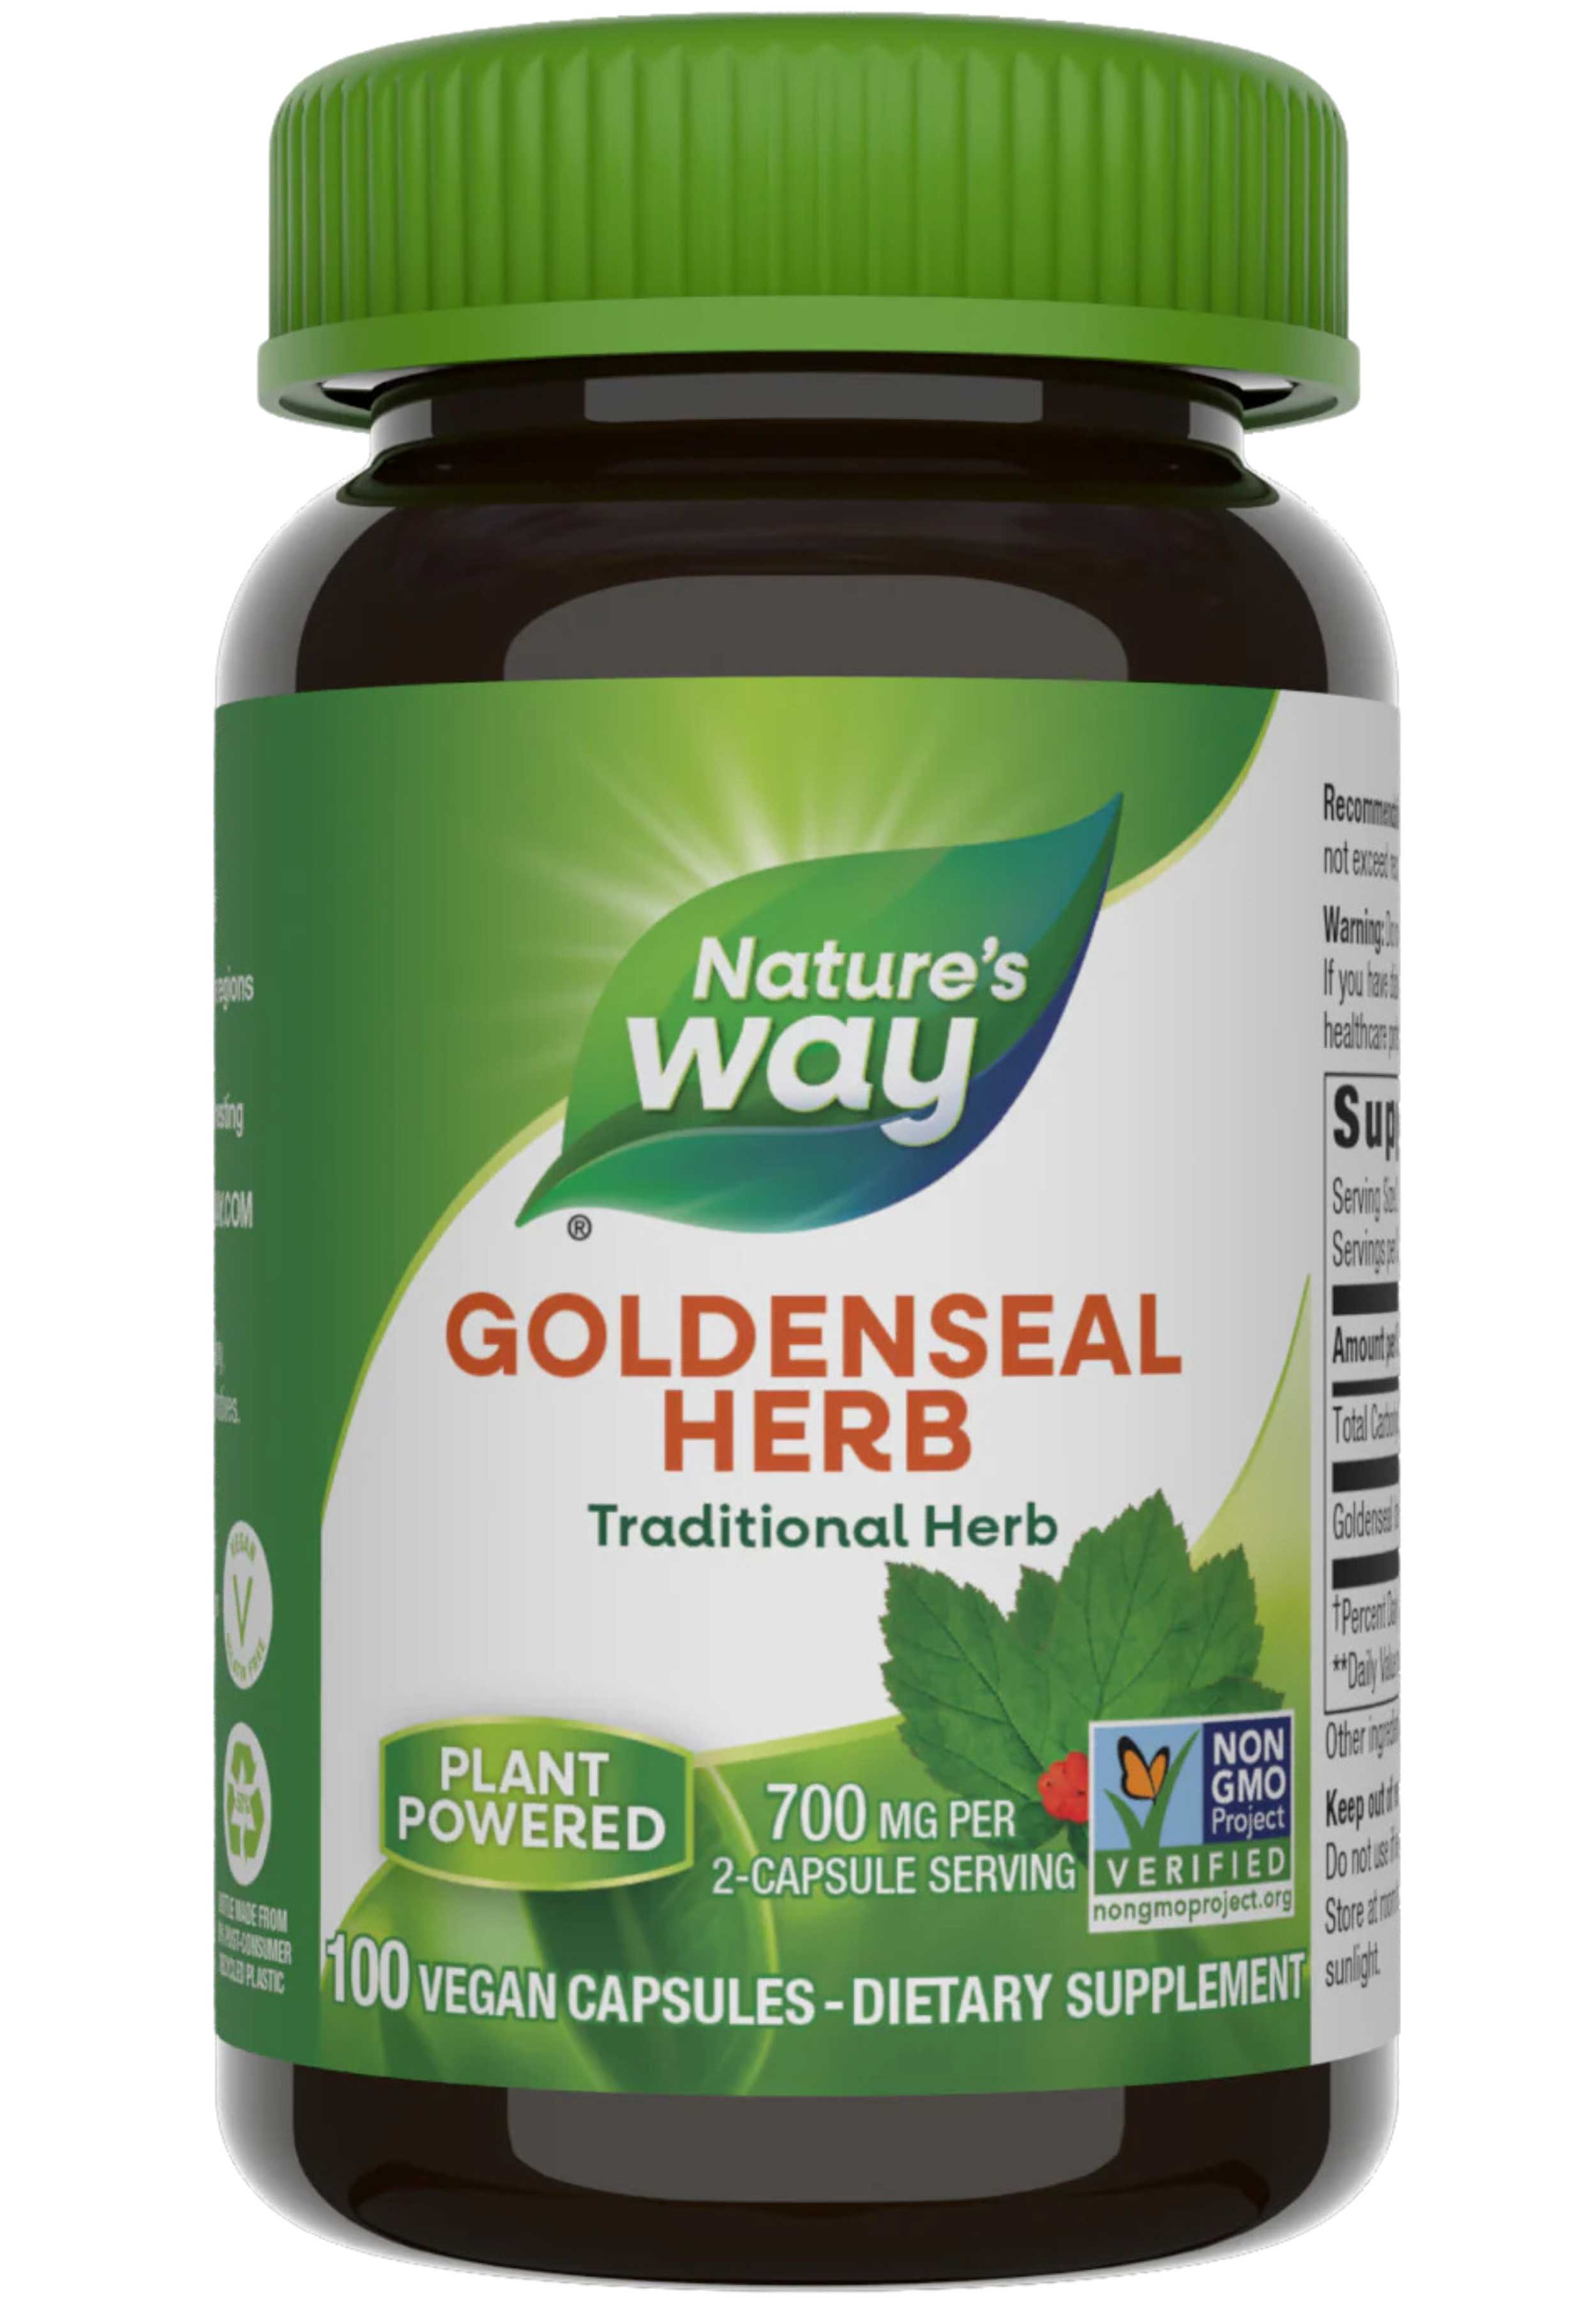 Nature's Way Goldenseal Herb